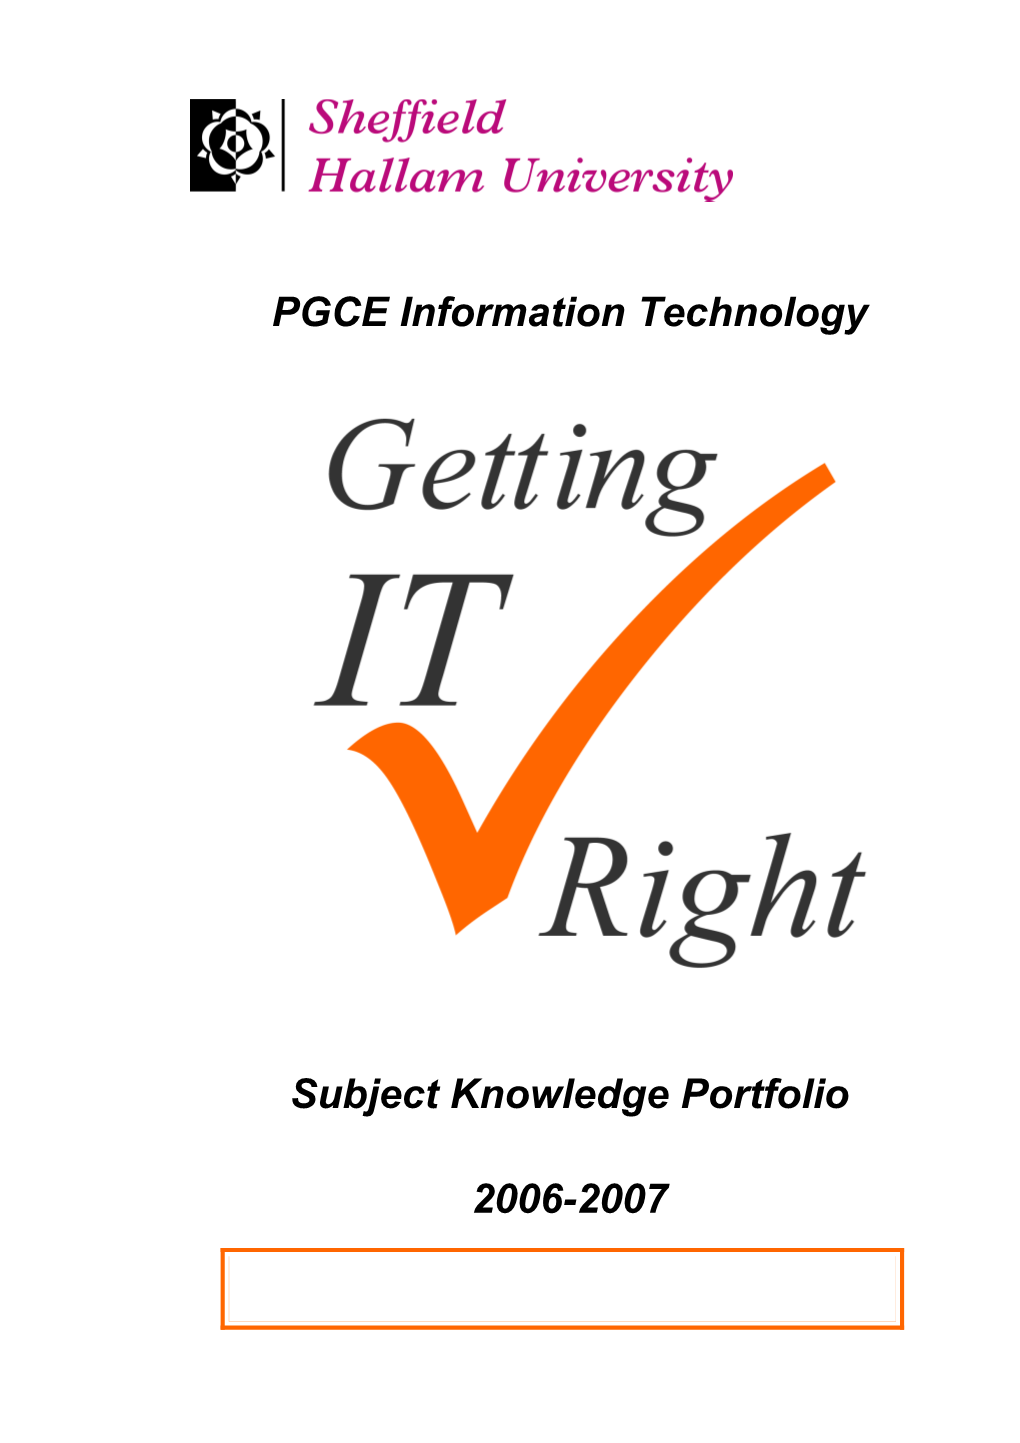 PGCE Information Technology